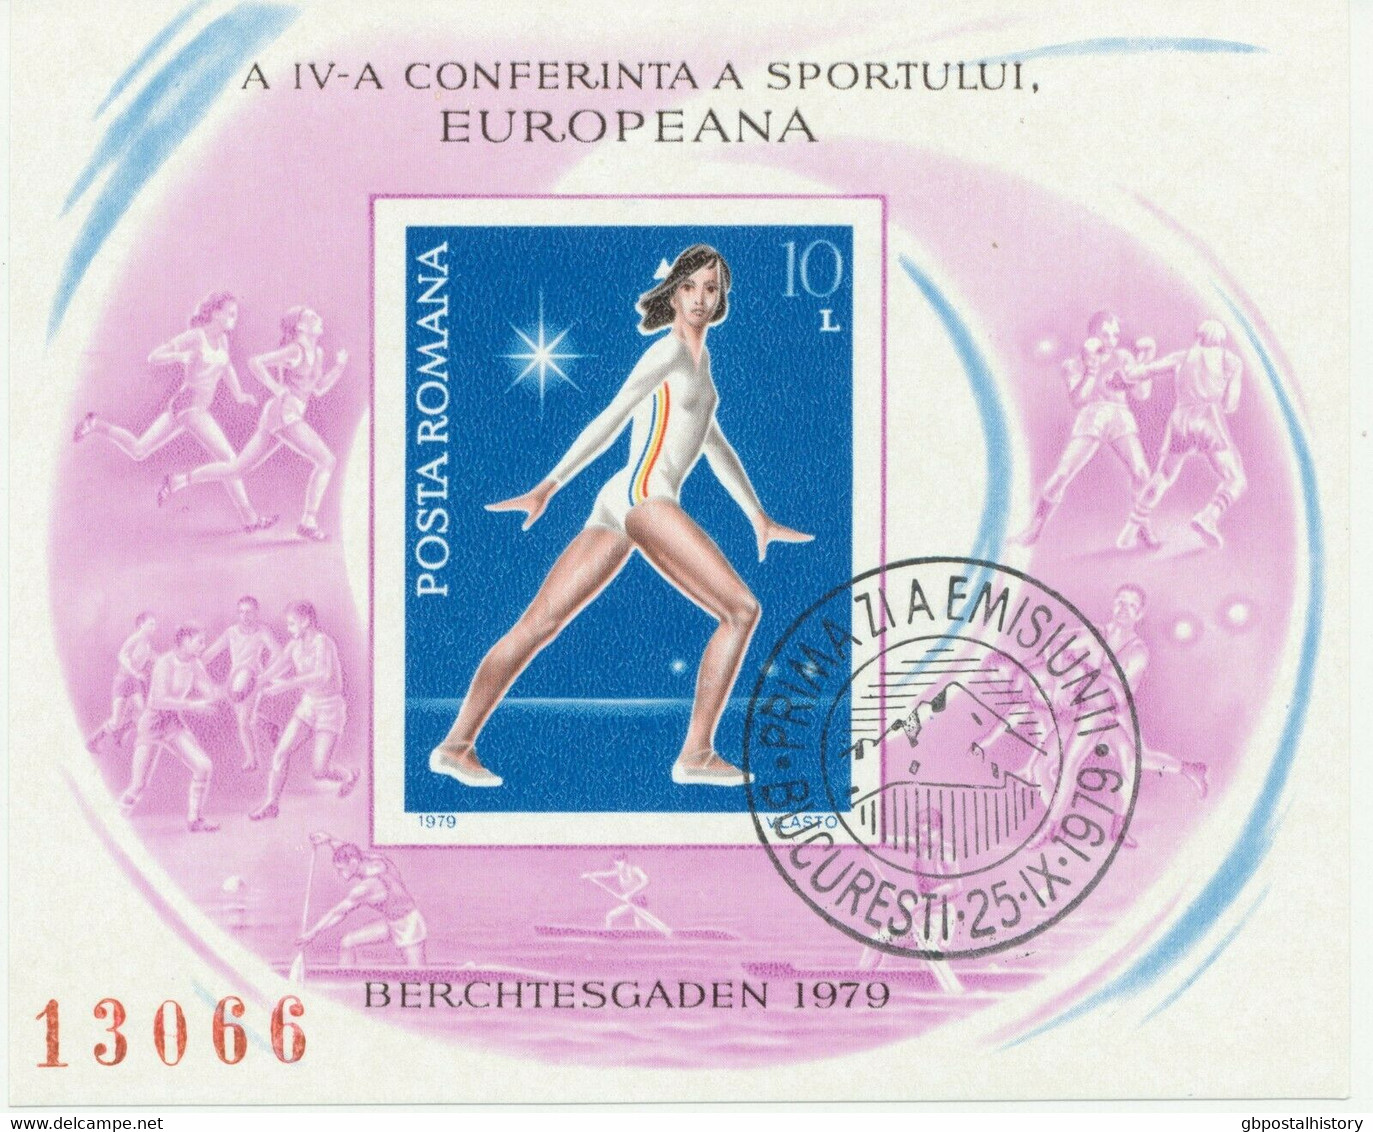 RUMÄNIEN 1979 VFU Block 10 L 4.Europäischer Sportkonferenz Berchtesgaden ABARTEN - Variétés Et Curiosités